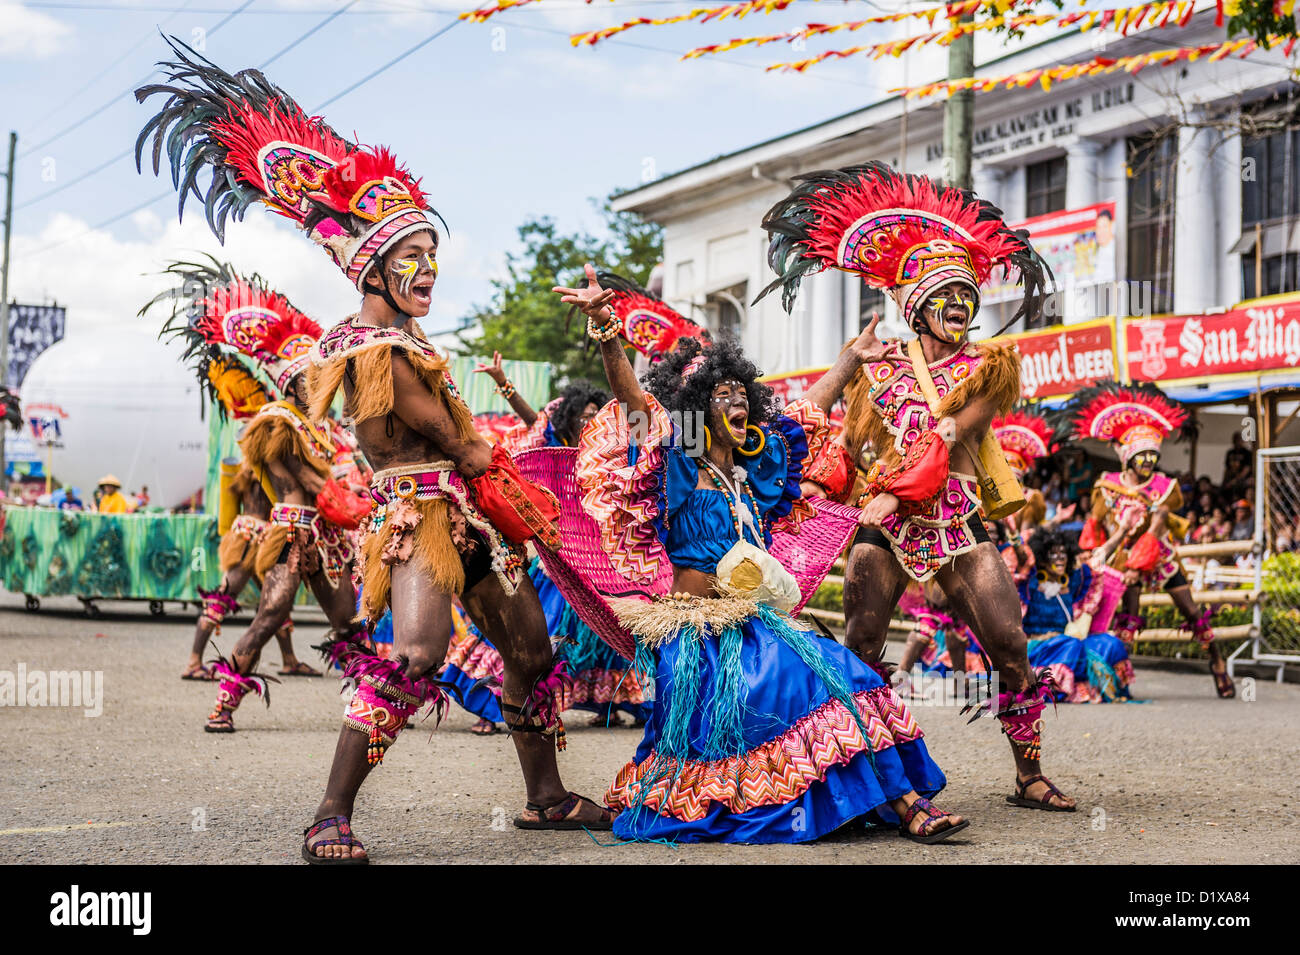 Les participants du concours de danse au cours de la célébration de Dinagyang en hommage à "La Santo Niño', Iloilo, Philippines, Asie Banque D'Images